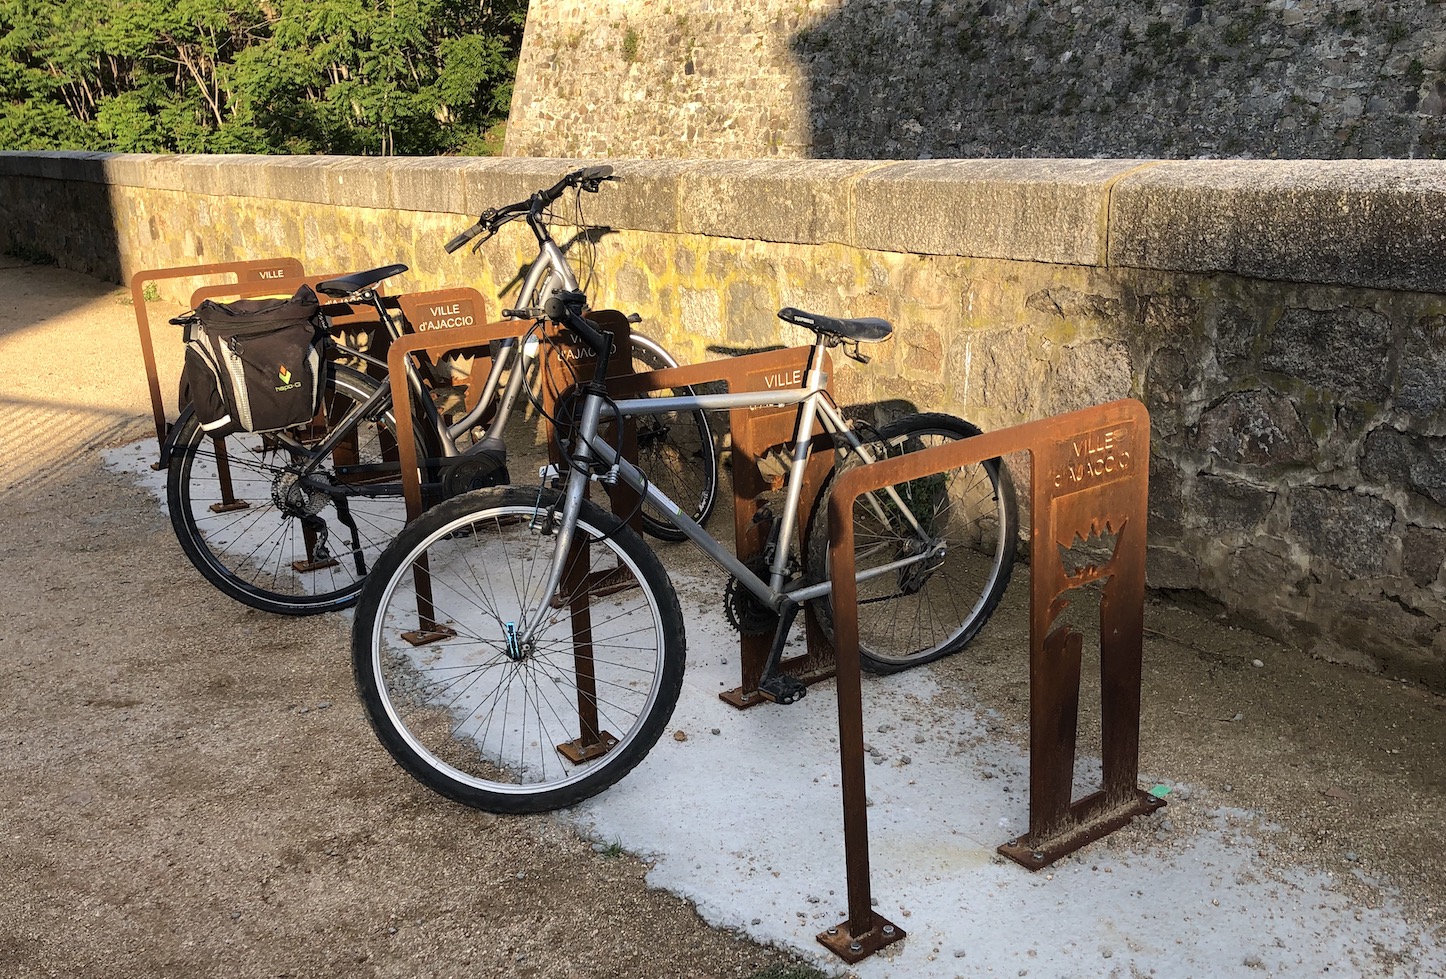 Stationnement des vélos à Ajaccio : Velocità passe aux actes